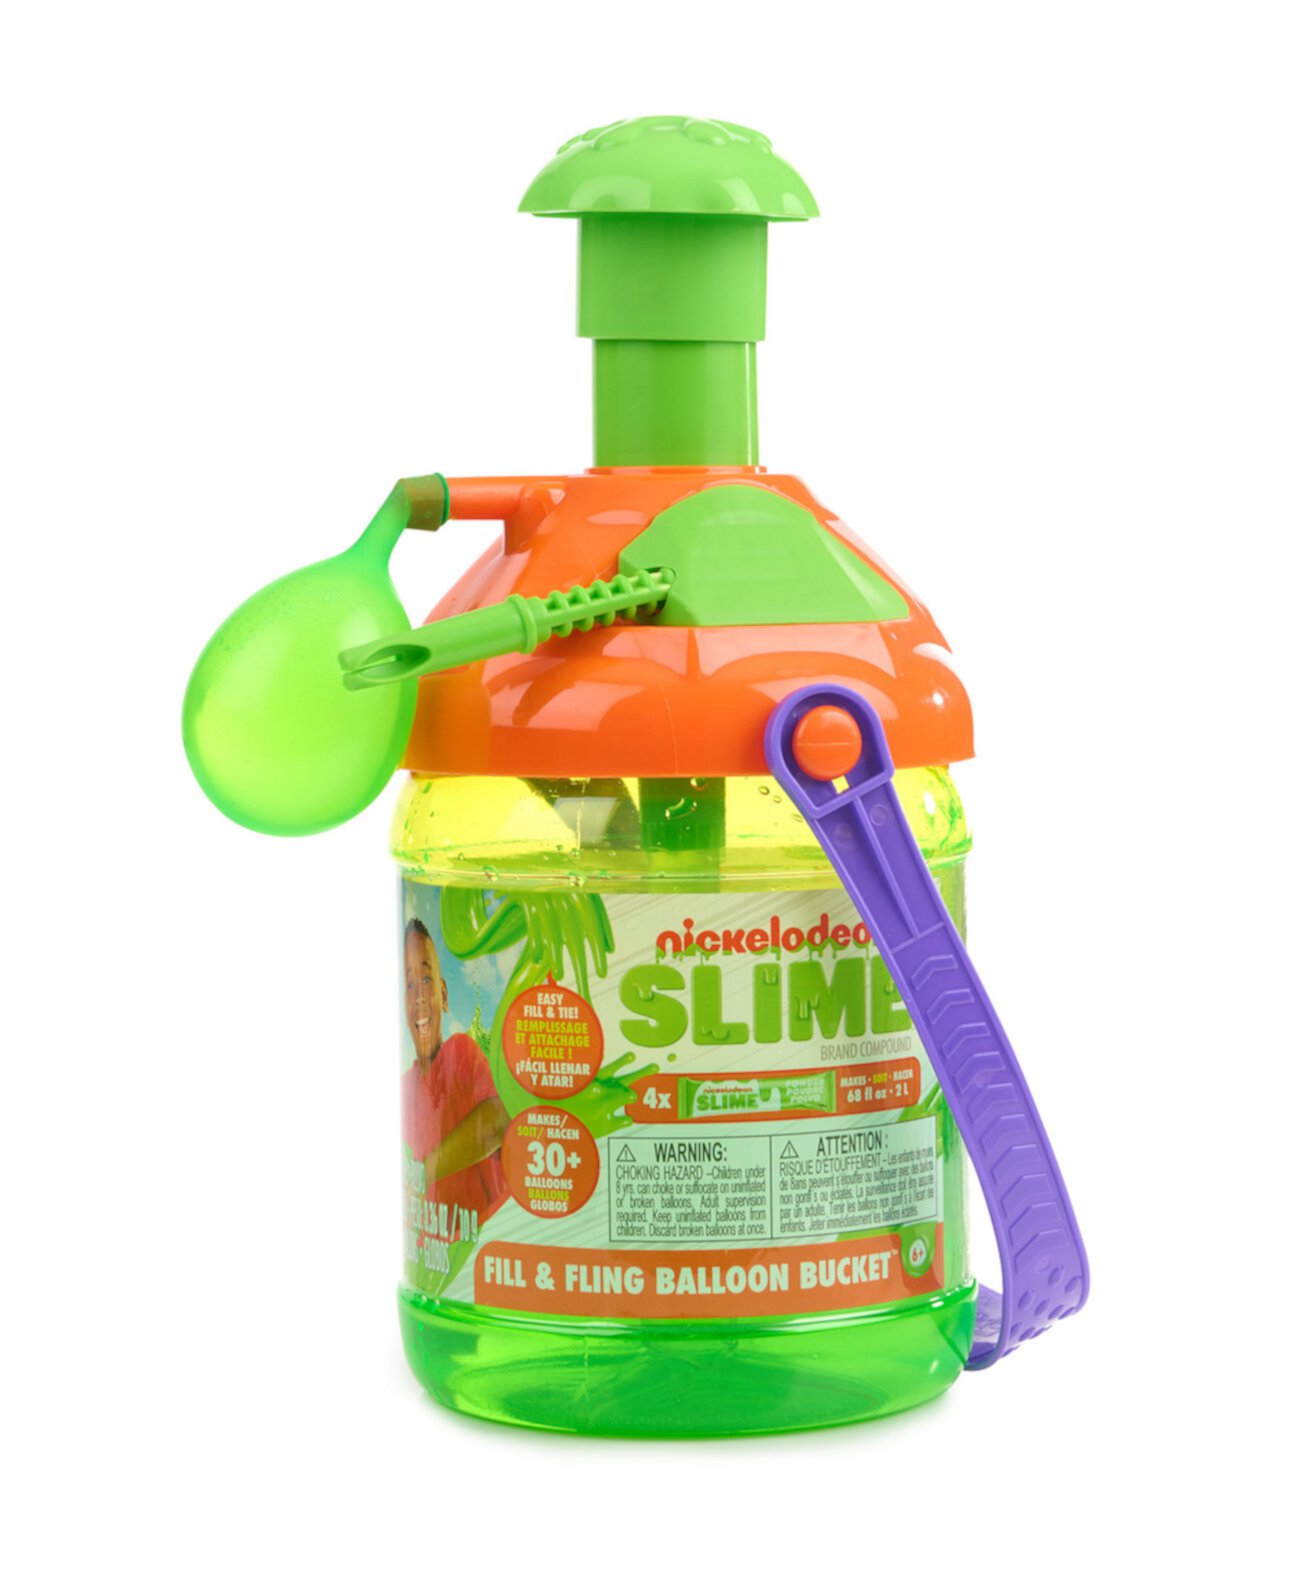 Ведро для воздушных шаров с составным наполнителем Nickelodeon Slime Brand Nerf